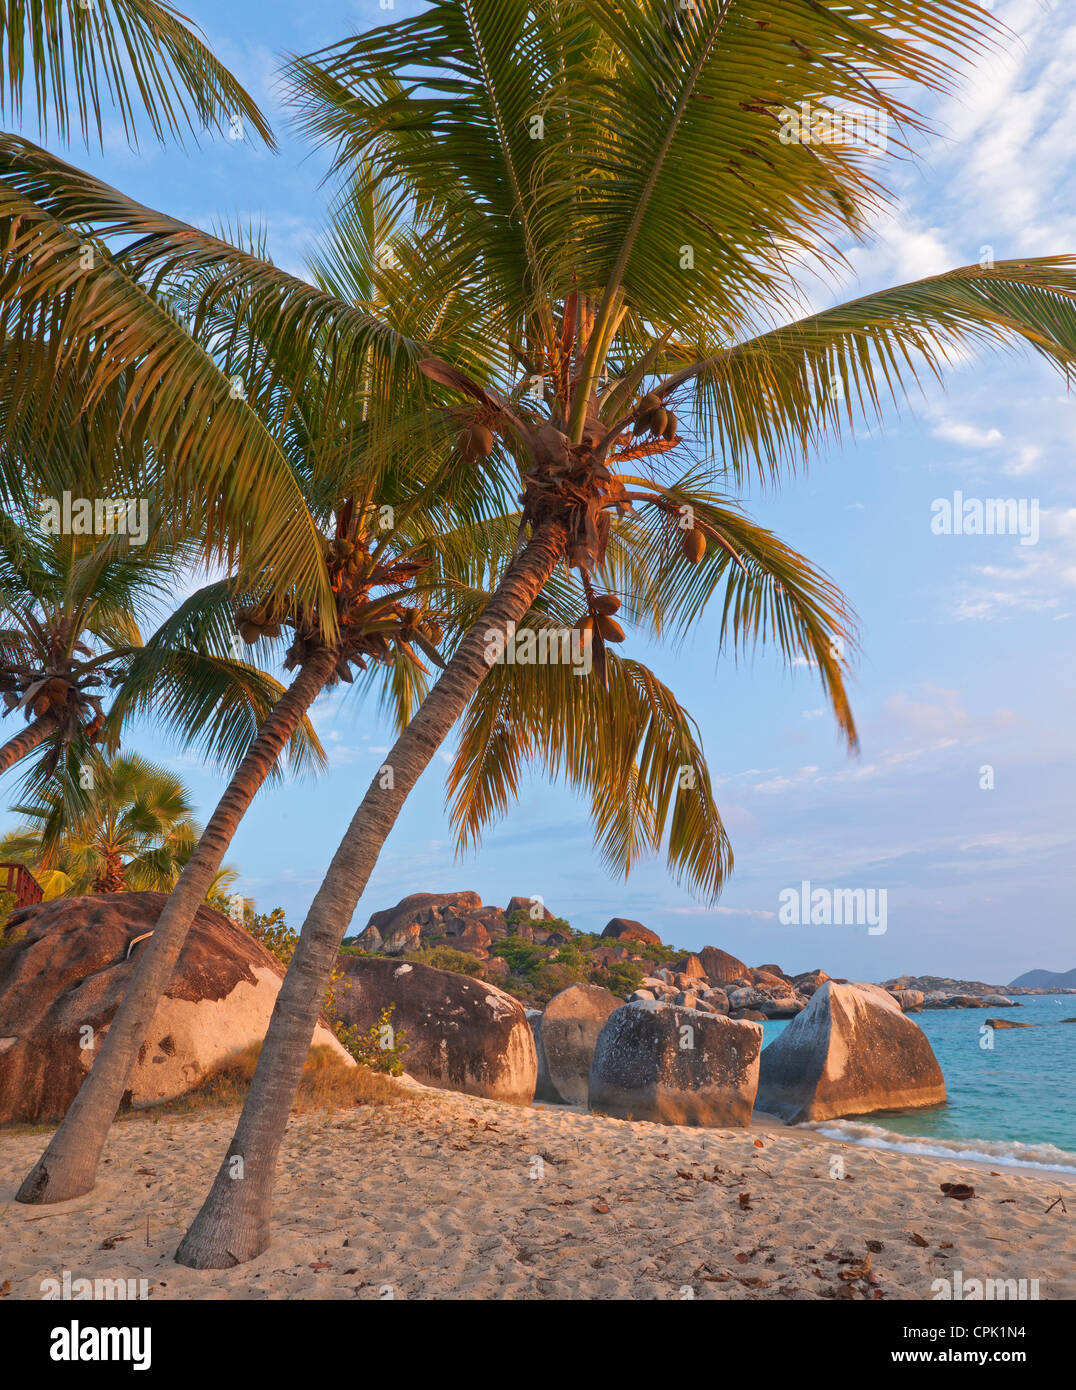 Virgin Gorda, îles Vierges britanniques, les Caraïbes palmiers se pencher à l'égard de la plage sur la baie, Spring Spring Bay National Park Banque D'Images